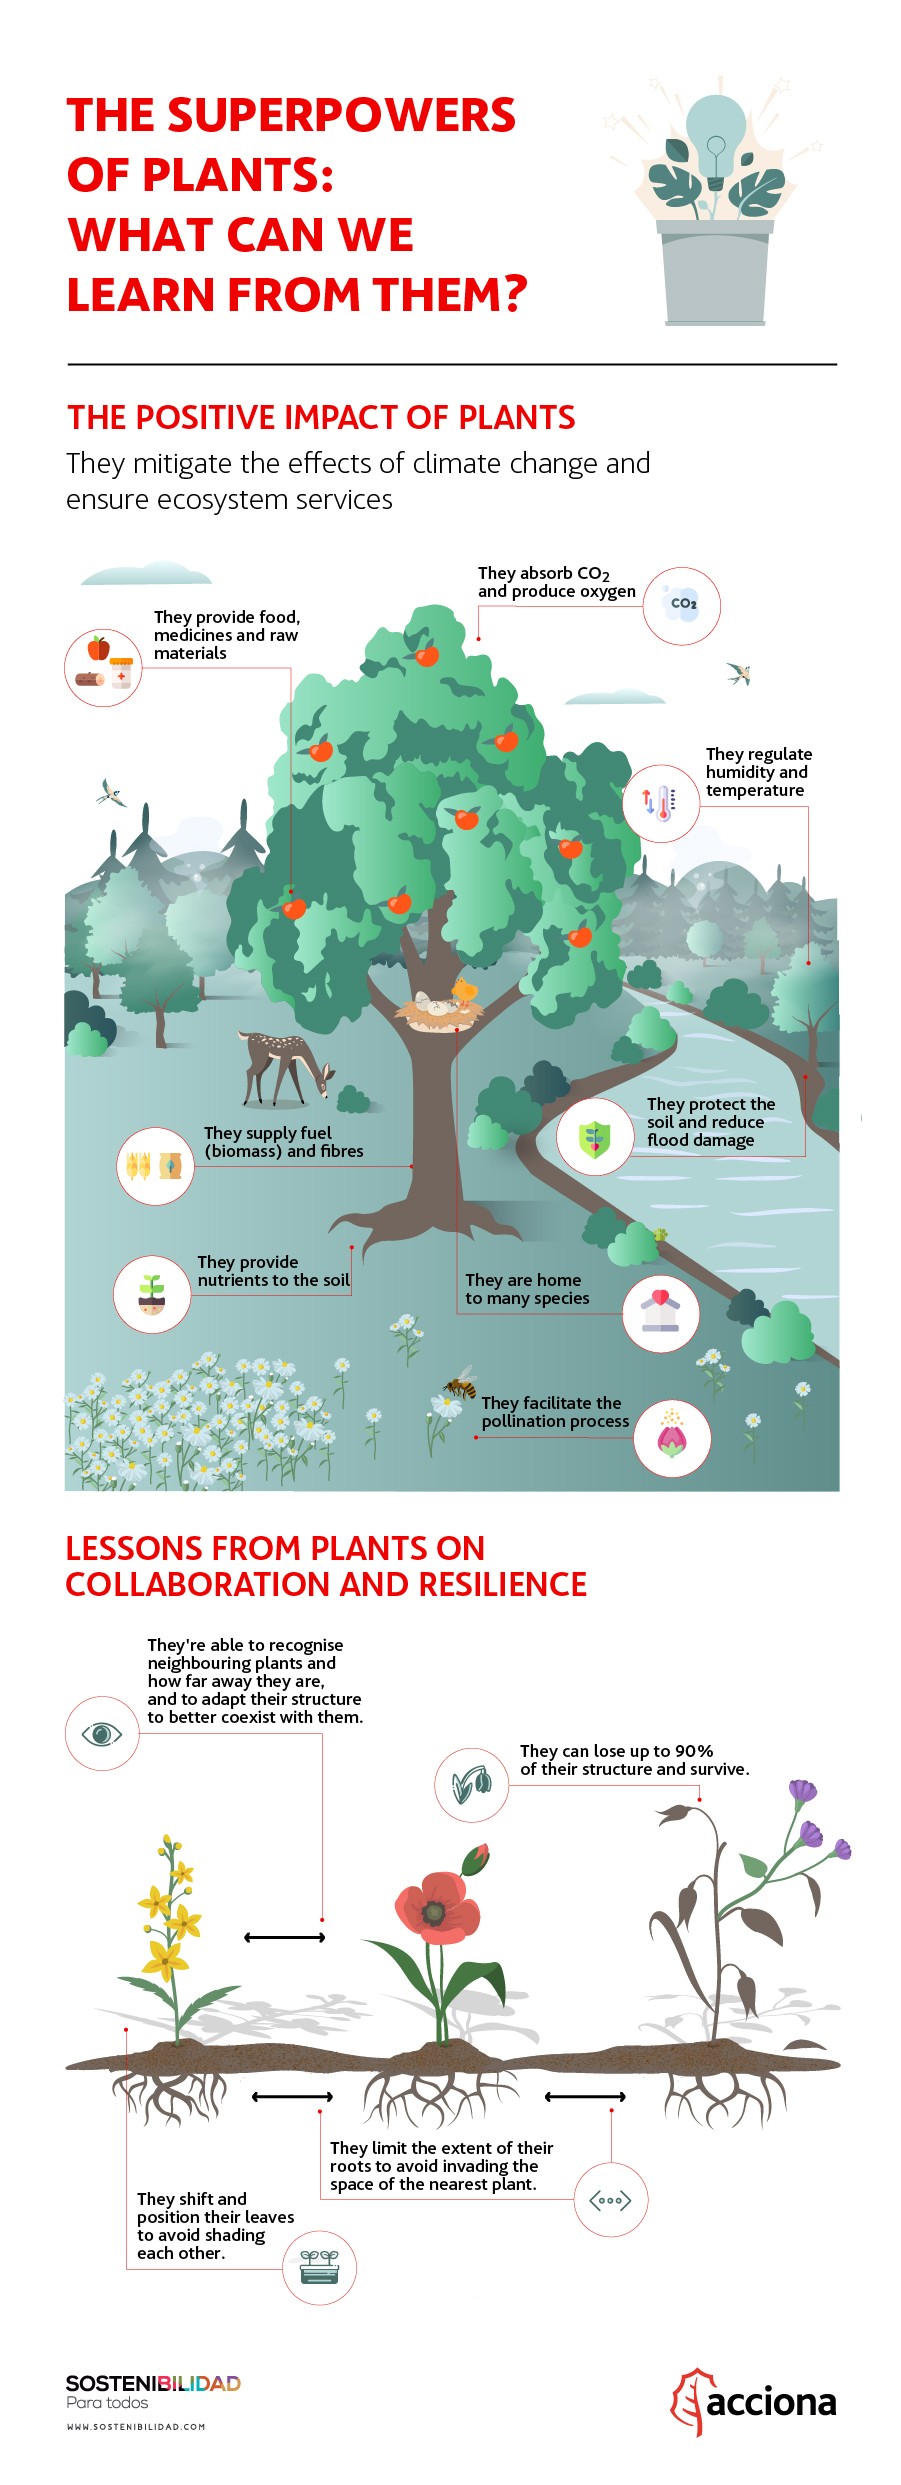 II. Benefits of Sustainable Plant Selection